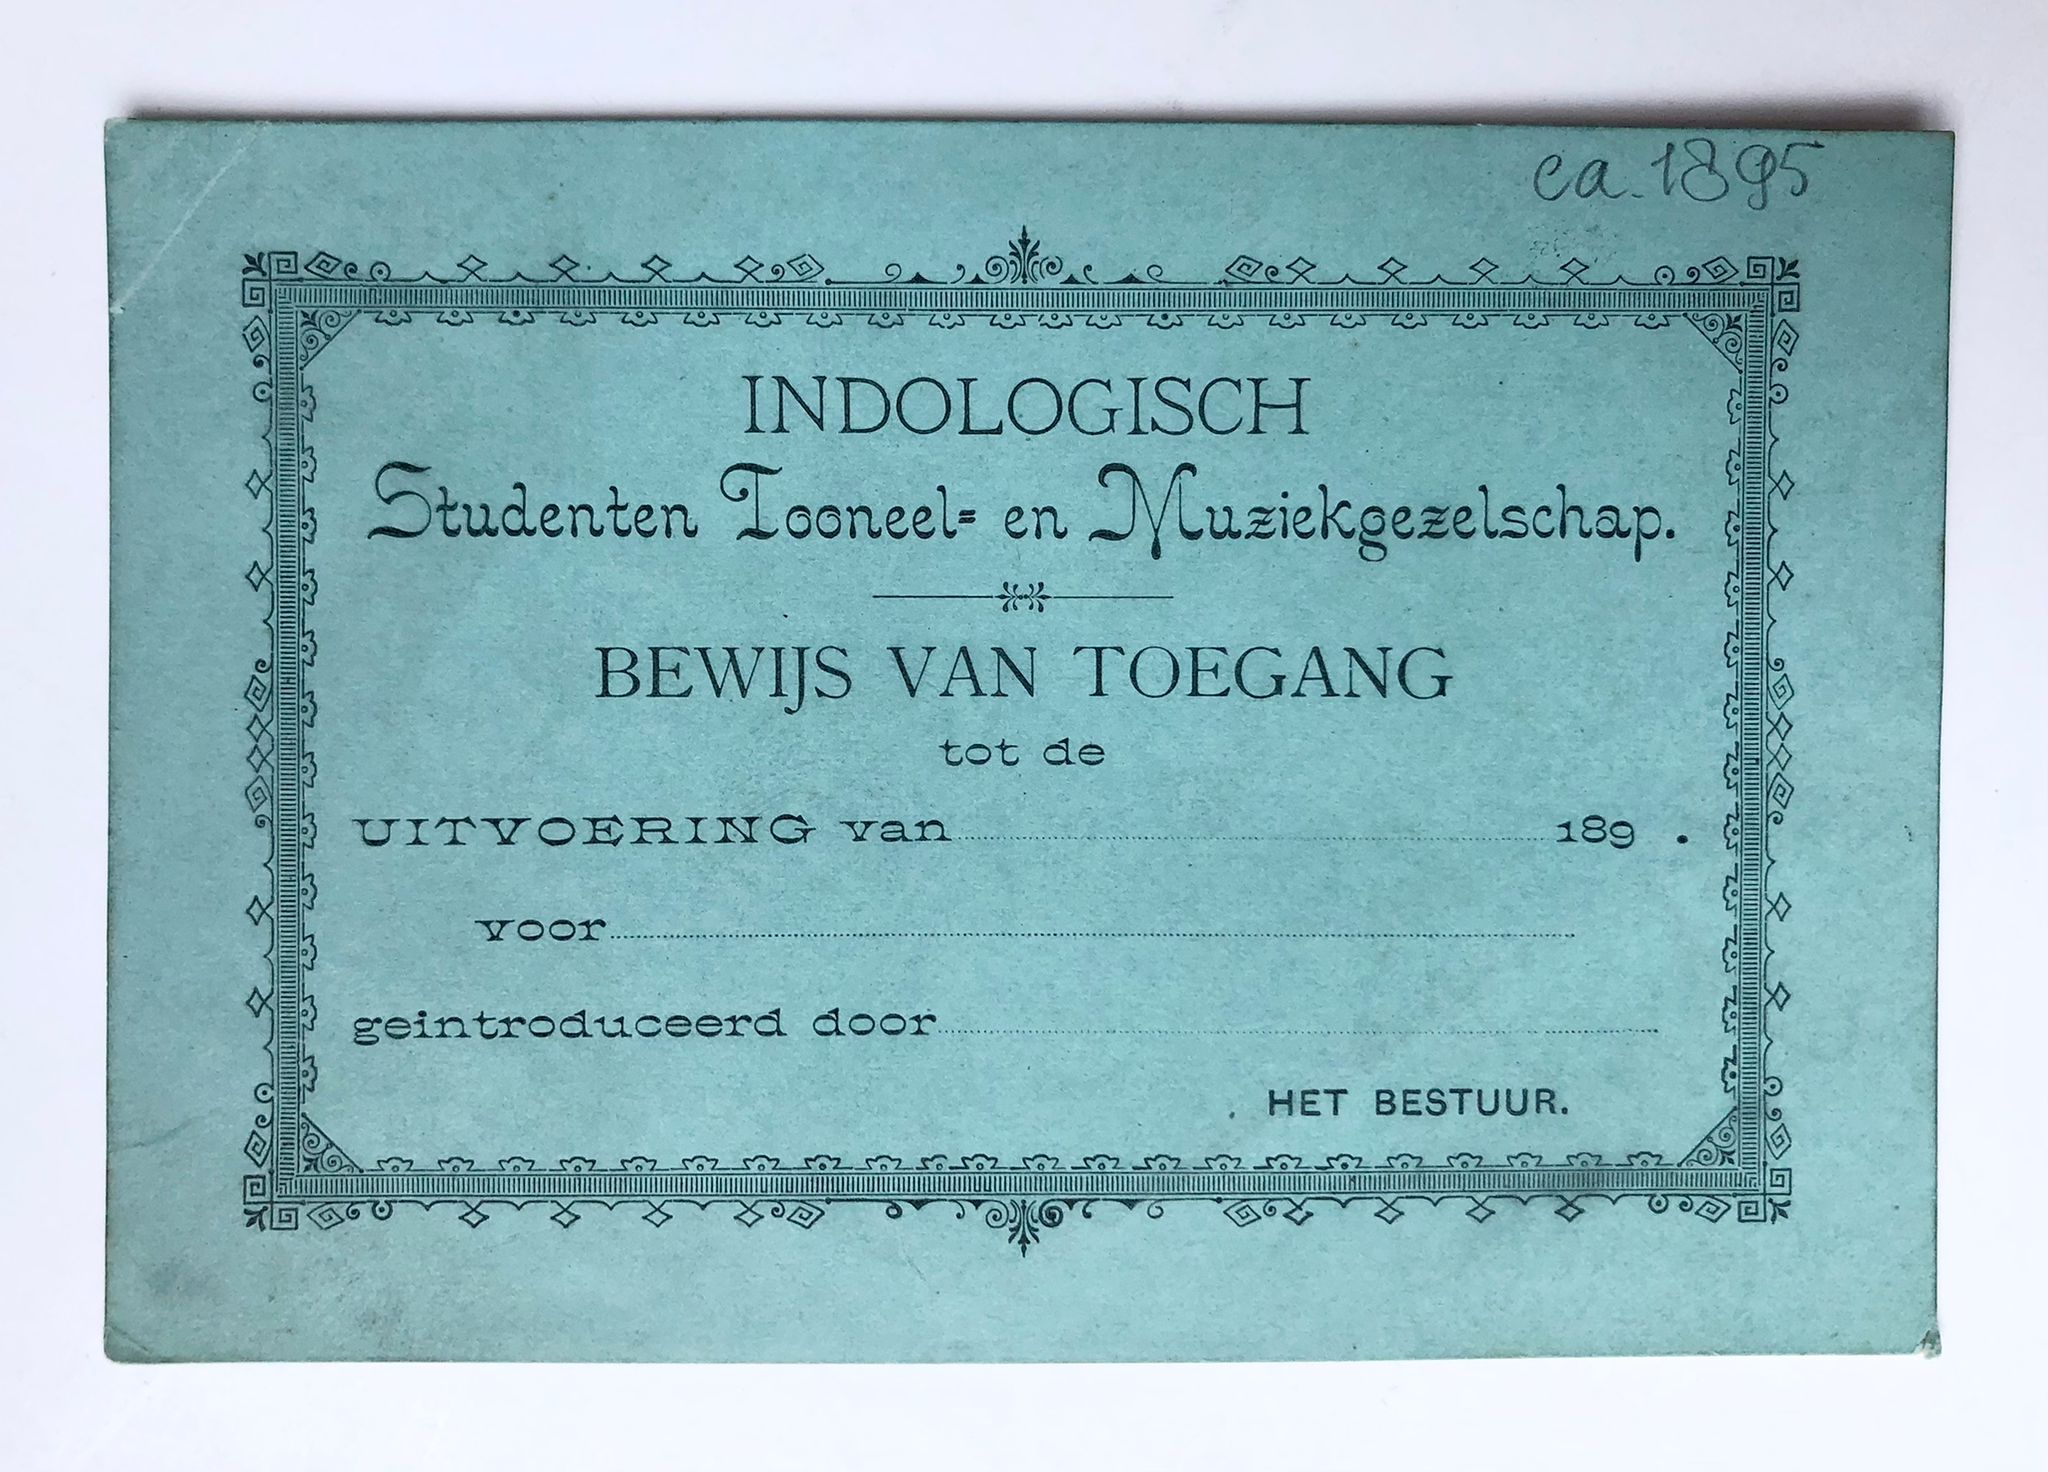 [Printed card, Indie, Delft 1895] Bewijs van toegang voor uitvoering van het Indologisch studenten toneel en muziekgezelschap, ca. 1895. Printed, 1 p.